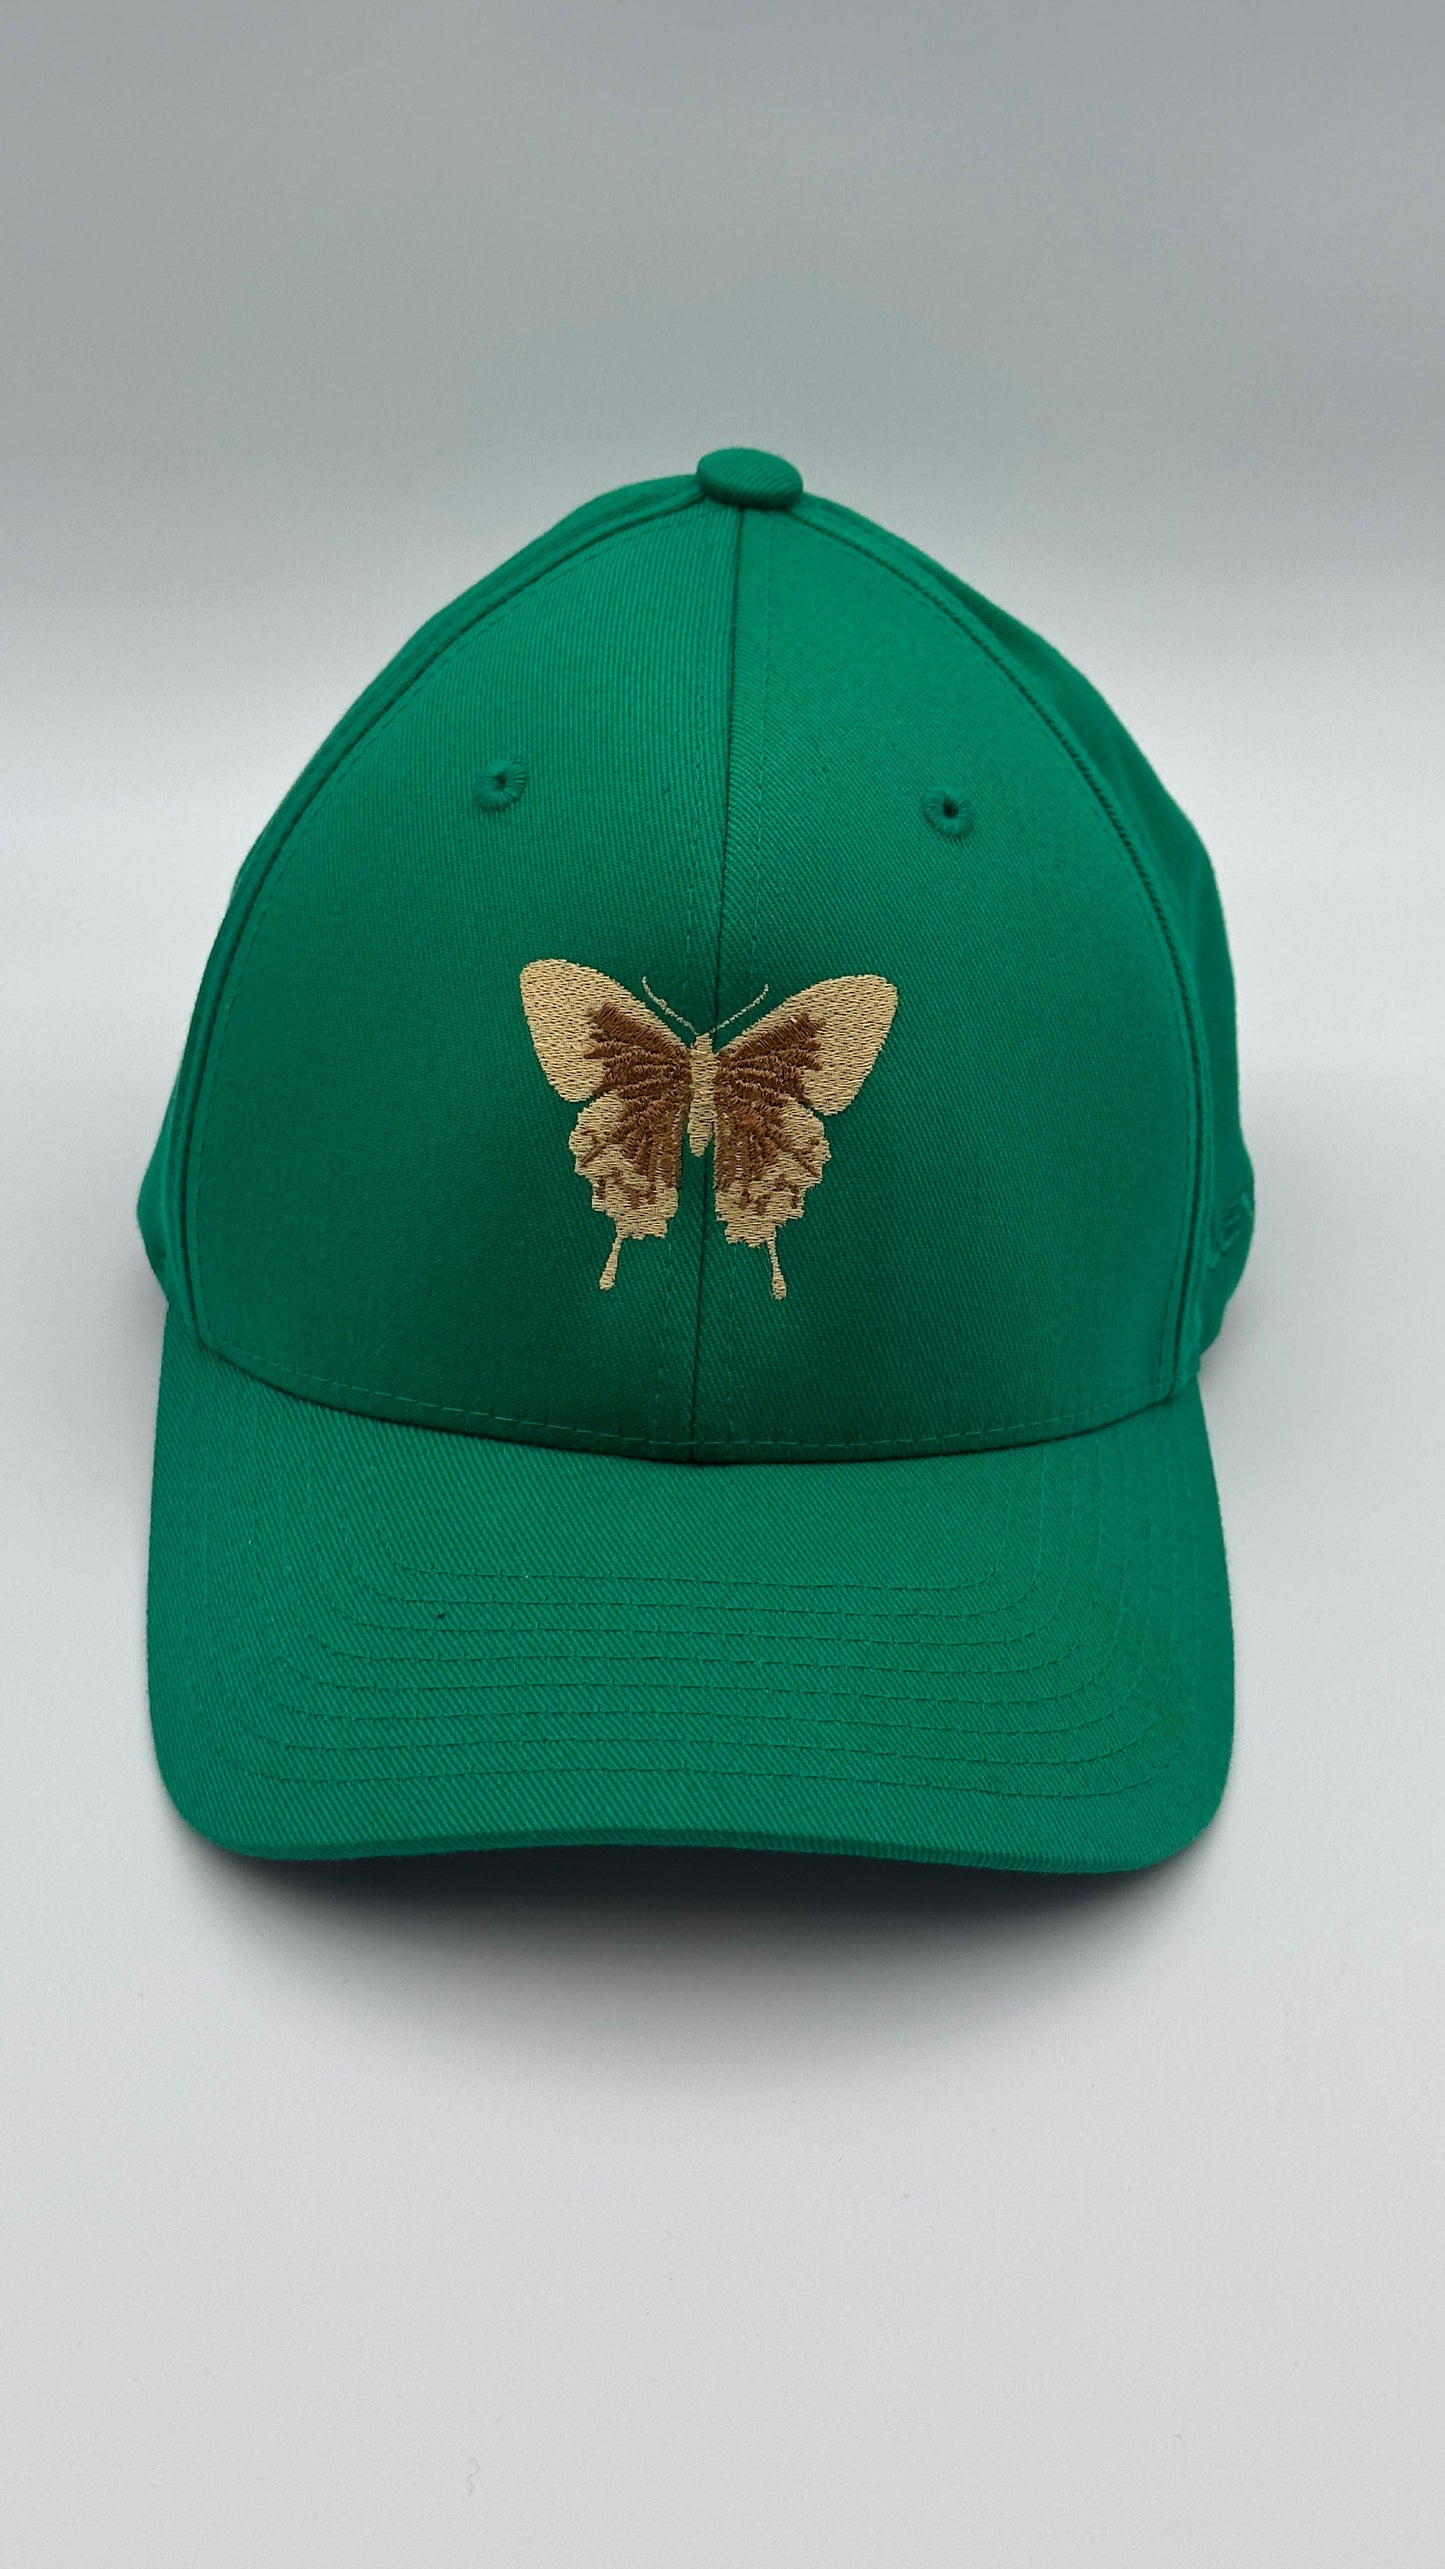 Butterfly Cap gold & green